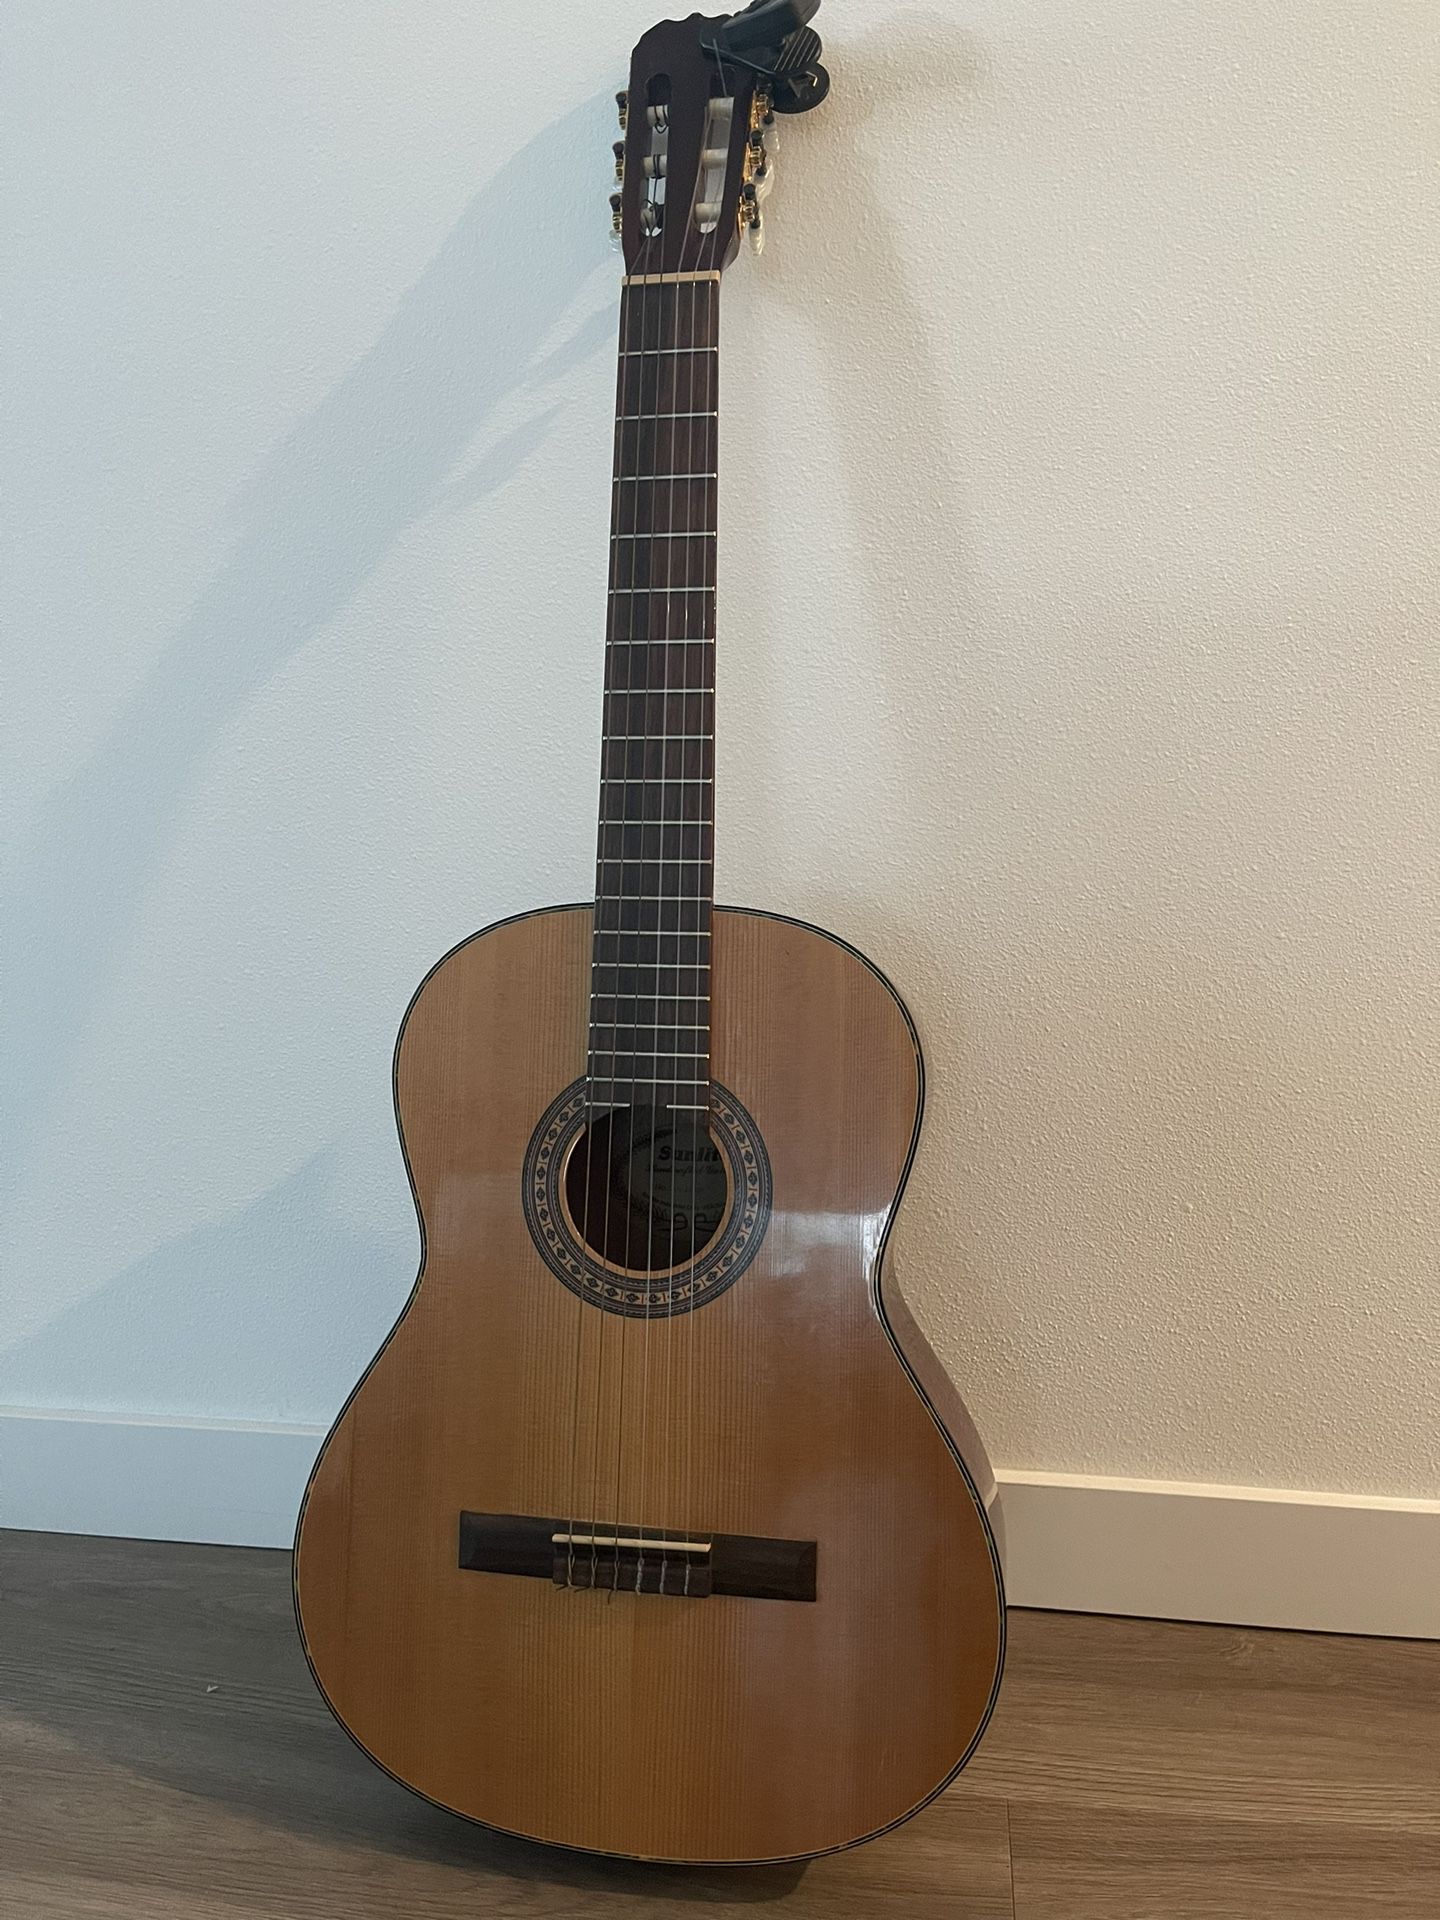 Sunlite Acoustic guitar 